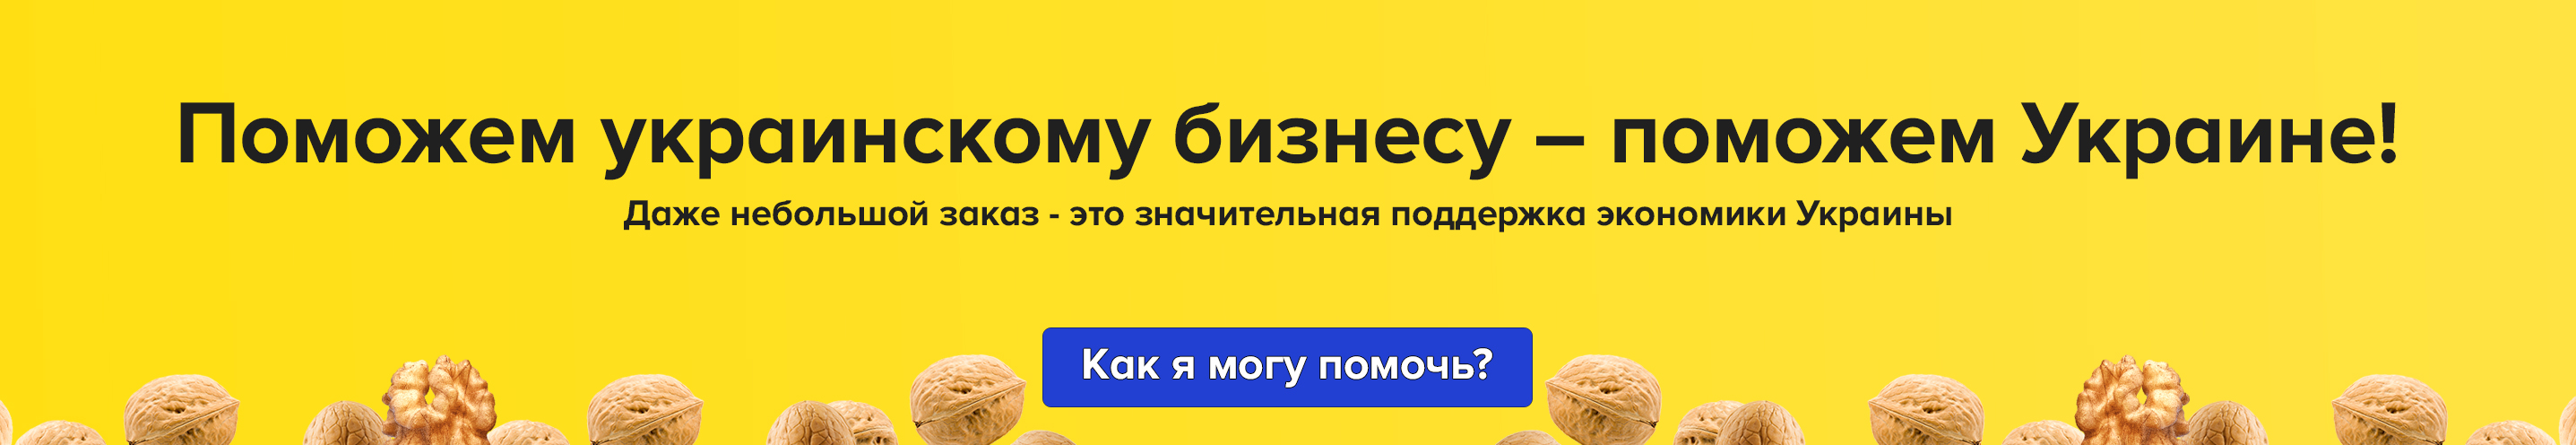 Поможем украинскому бизнесу - поможем Украине!